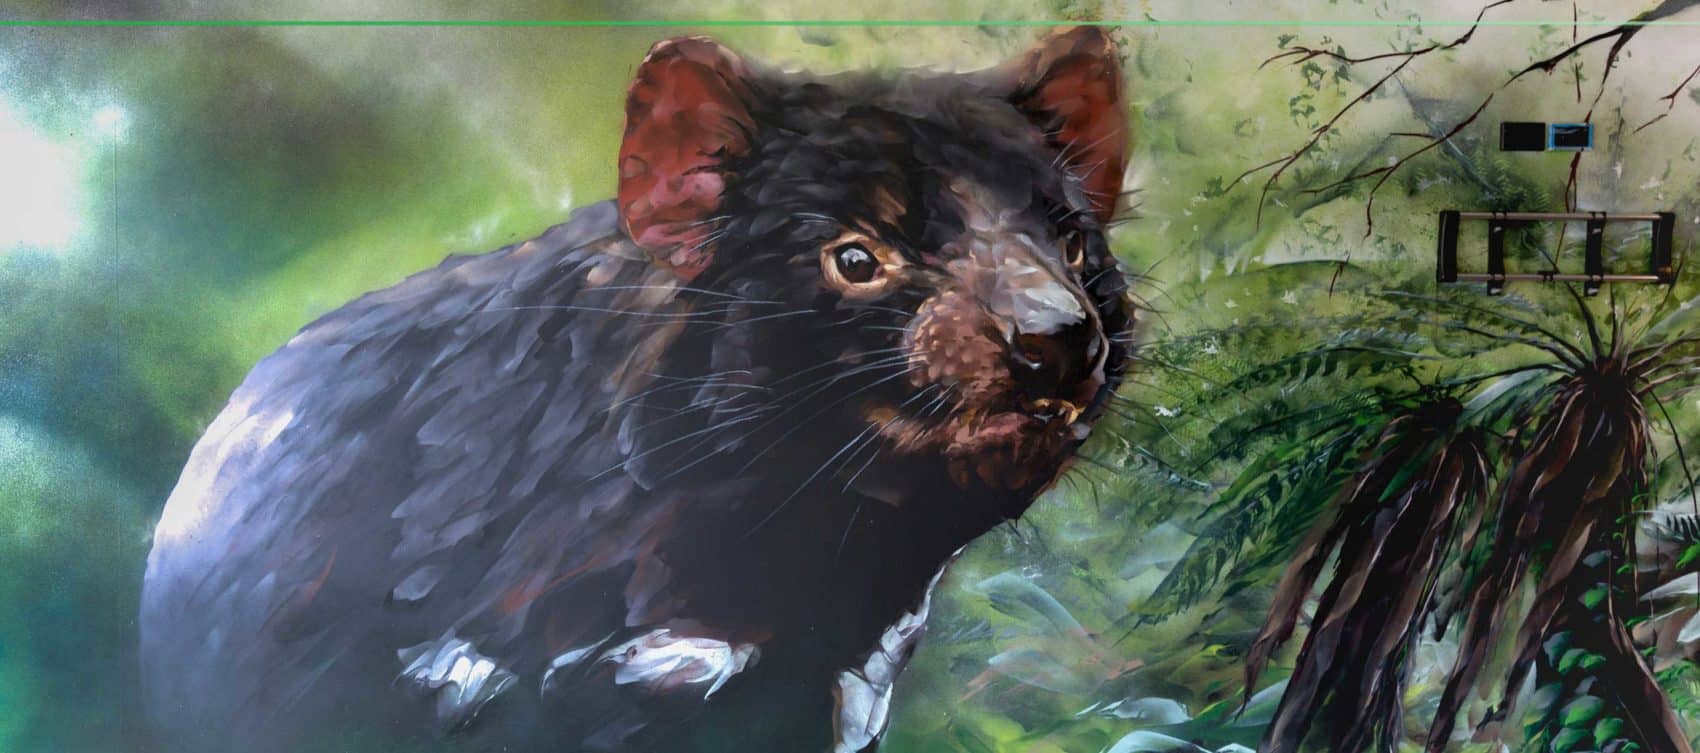 Tasmanian devil painted